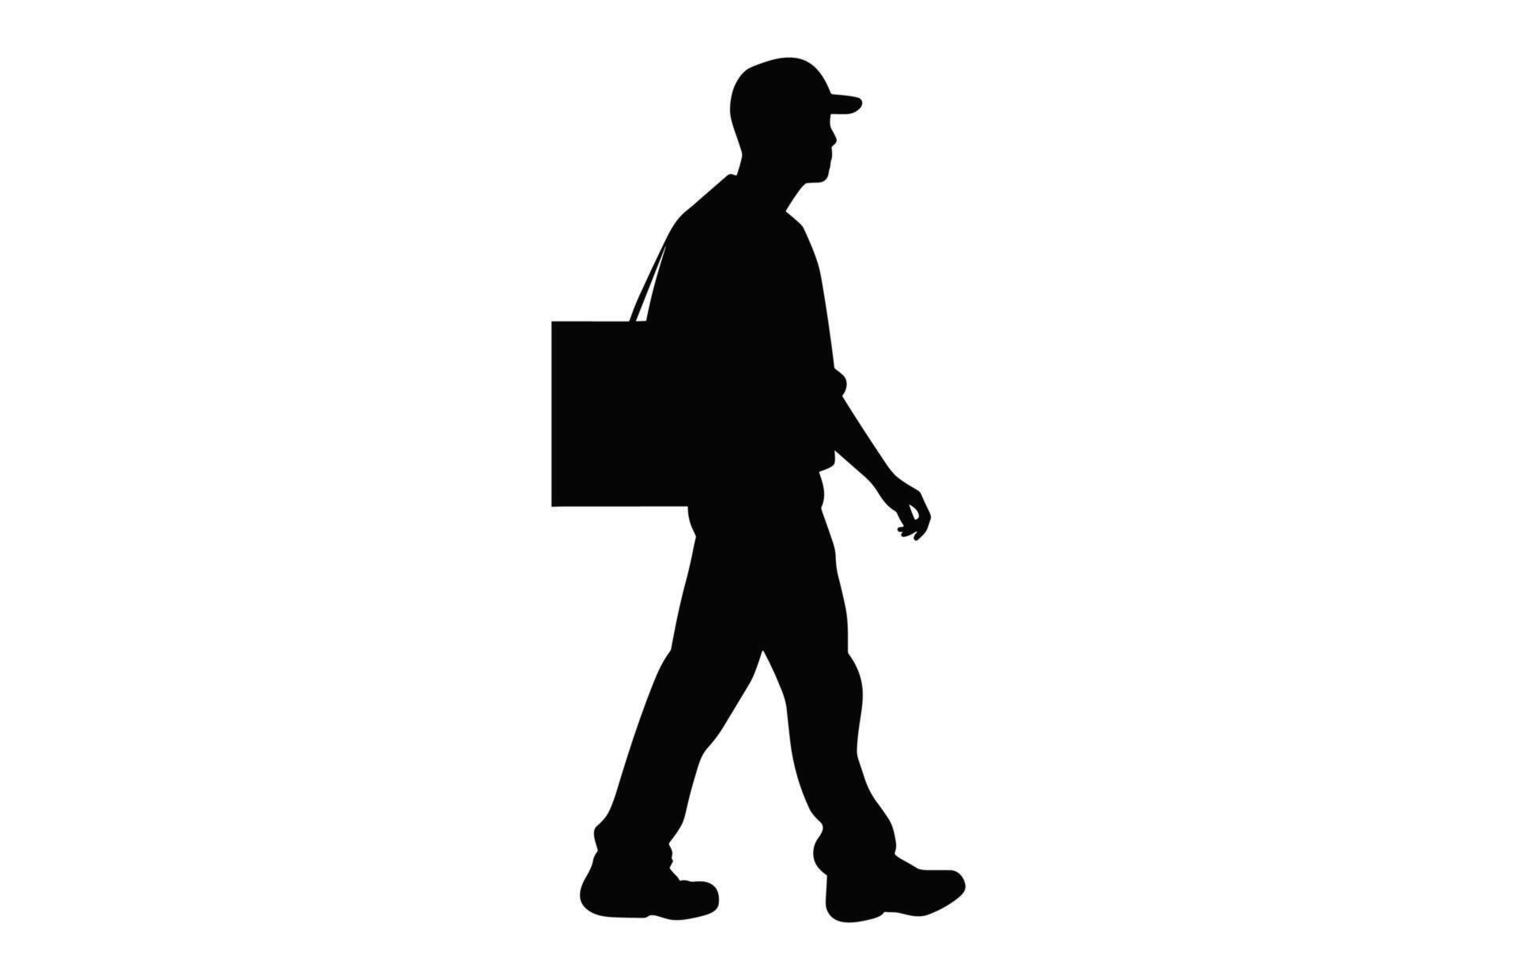 courrier un service avec paquet silhouette isolé sur une blanc arrière-plan, une livraison homme porter une boîte noir vecteur